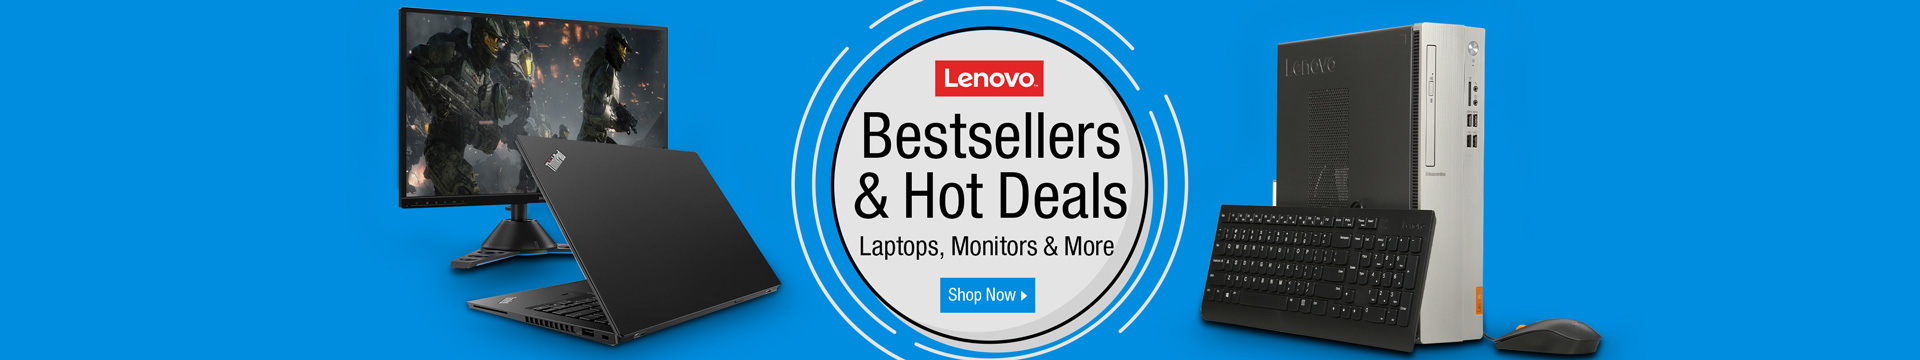 Lenovo Best Sellers